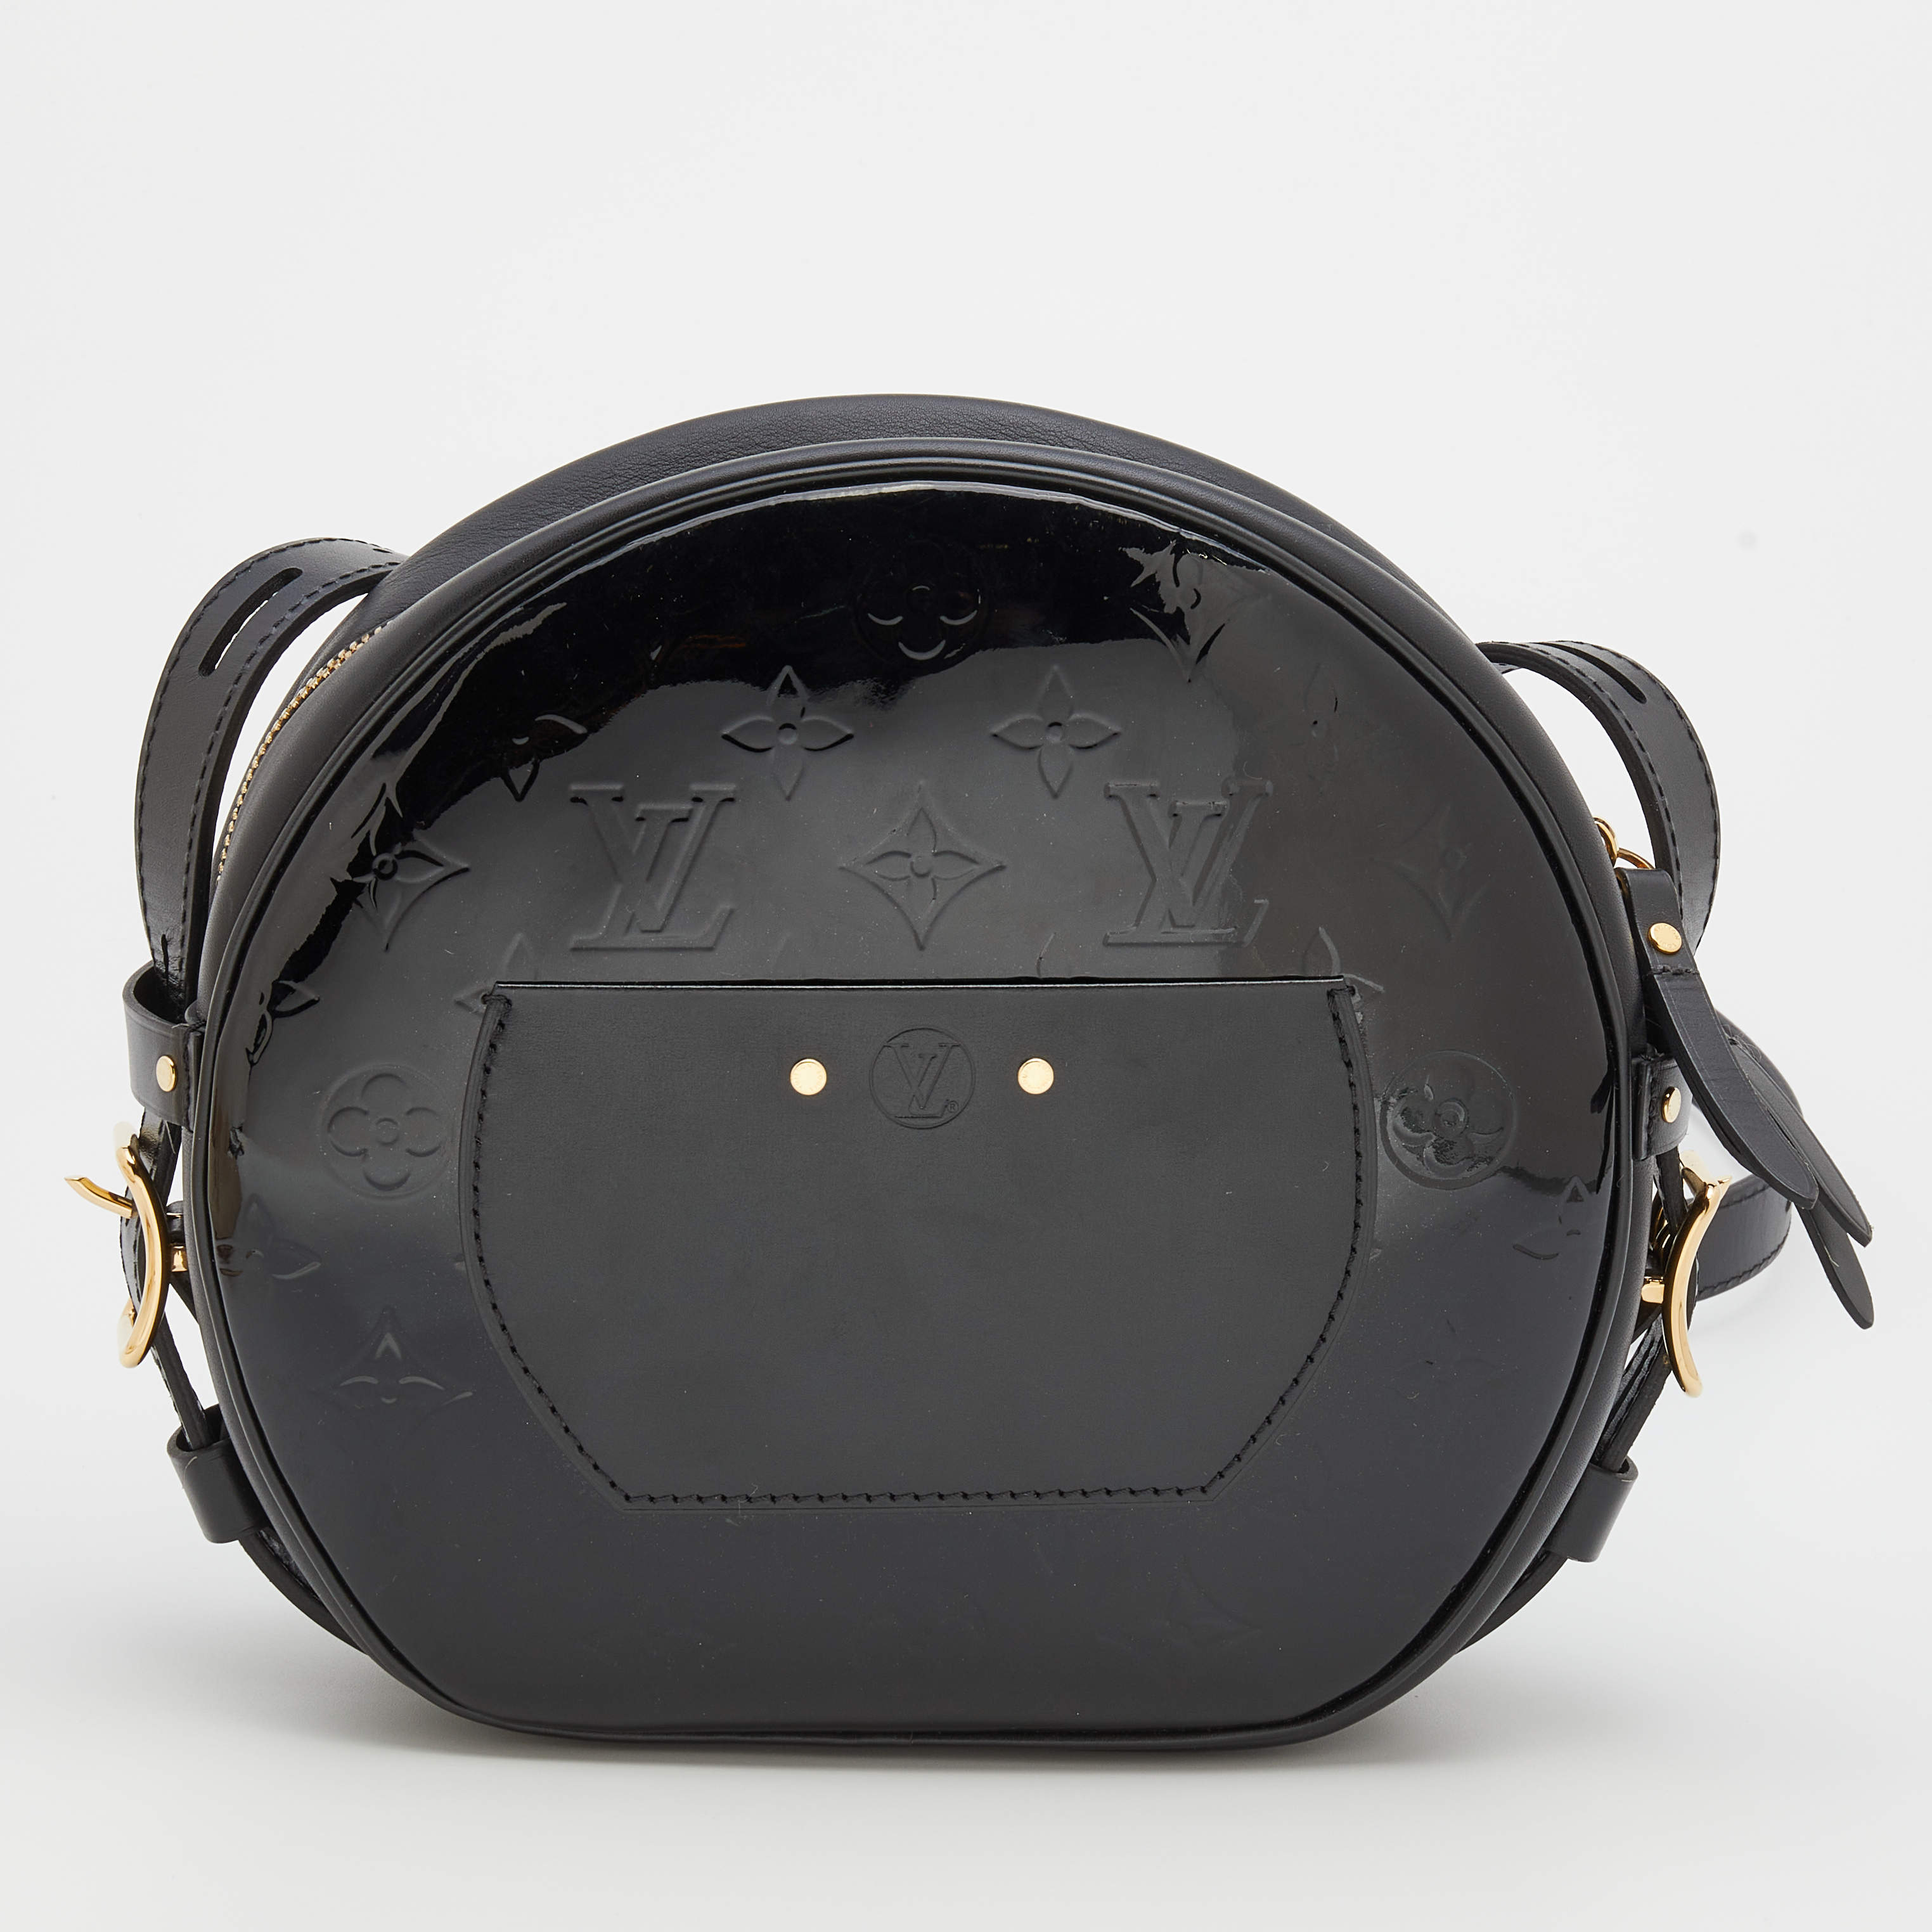 Louis Vuitton Boite Chapeau Souple  Stitch fix business casual, Lv  handbags, Fashion